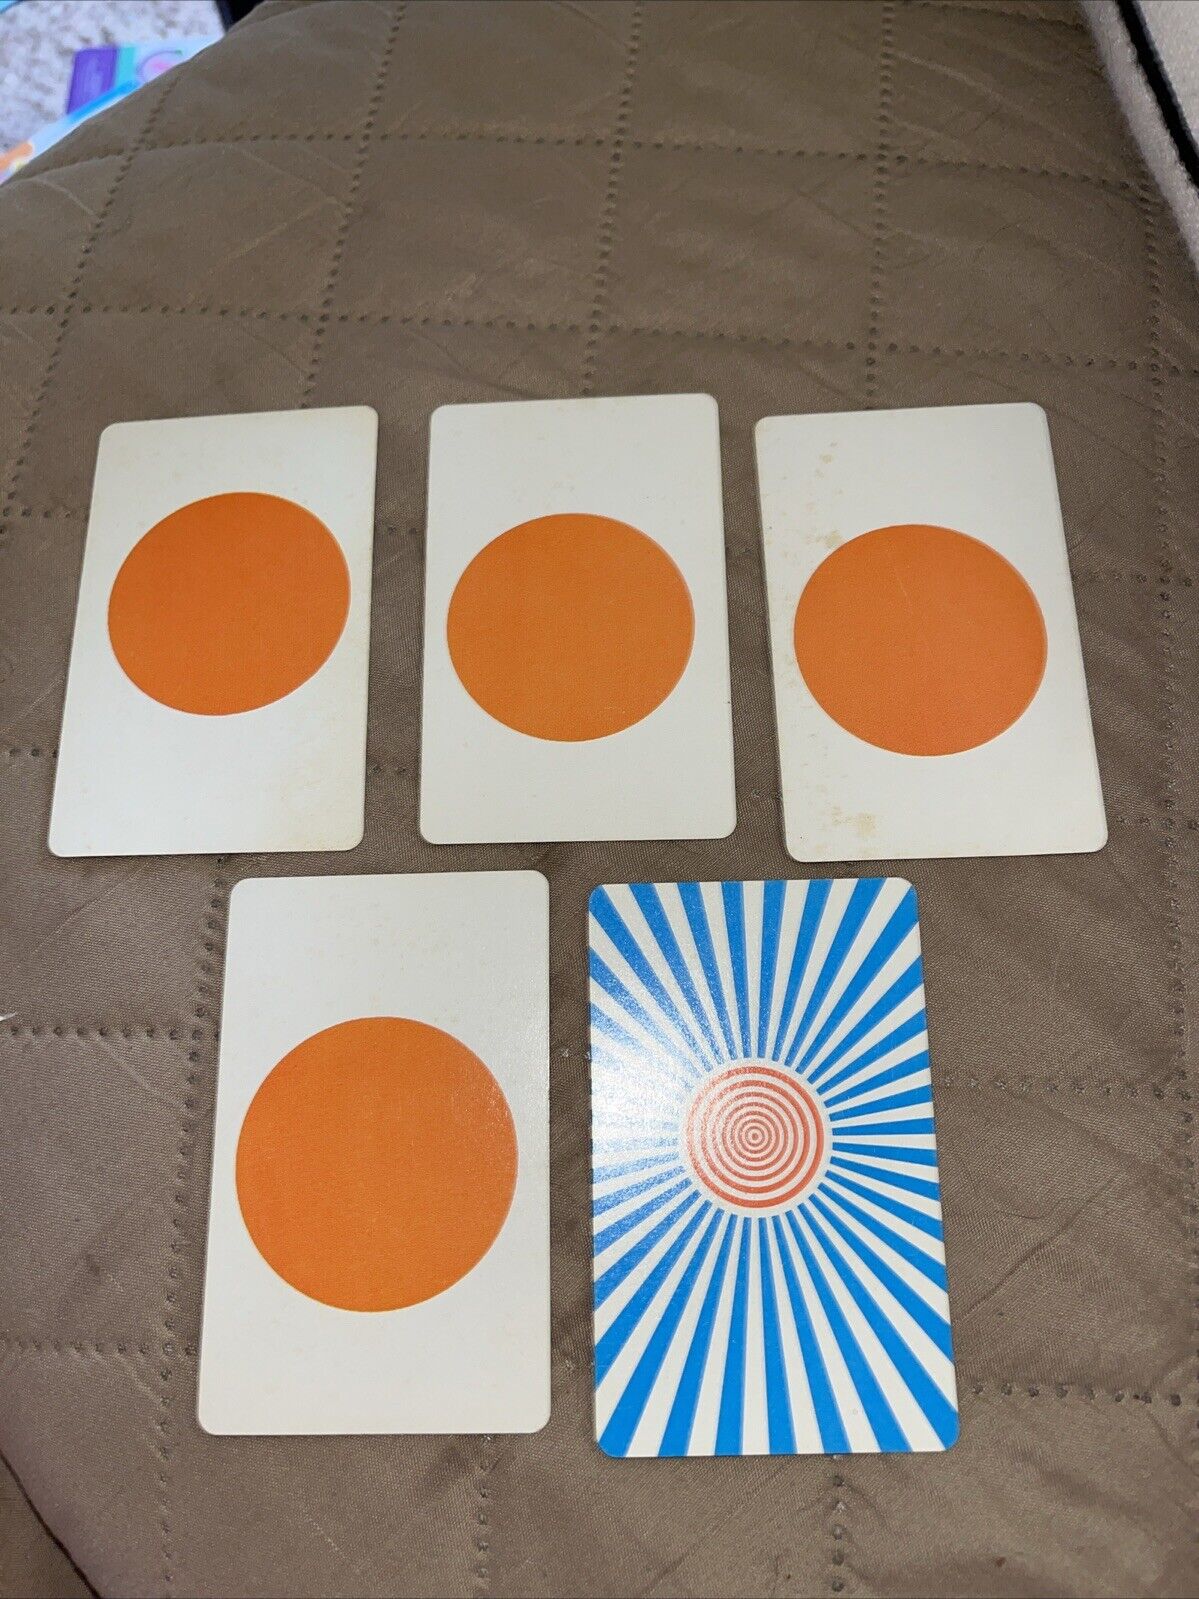 Kreskin\'s ESP Game Replacement Cards 5 Orange Dot Card